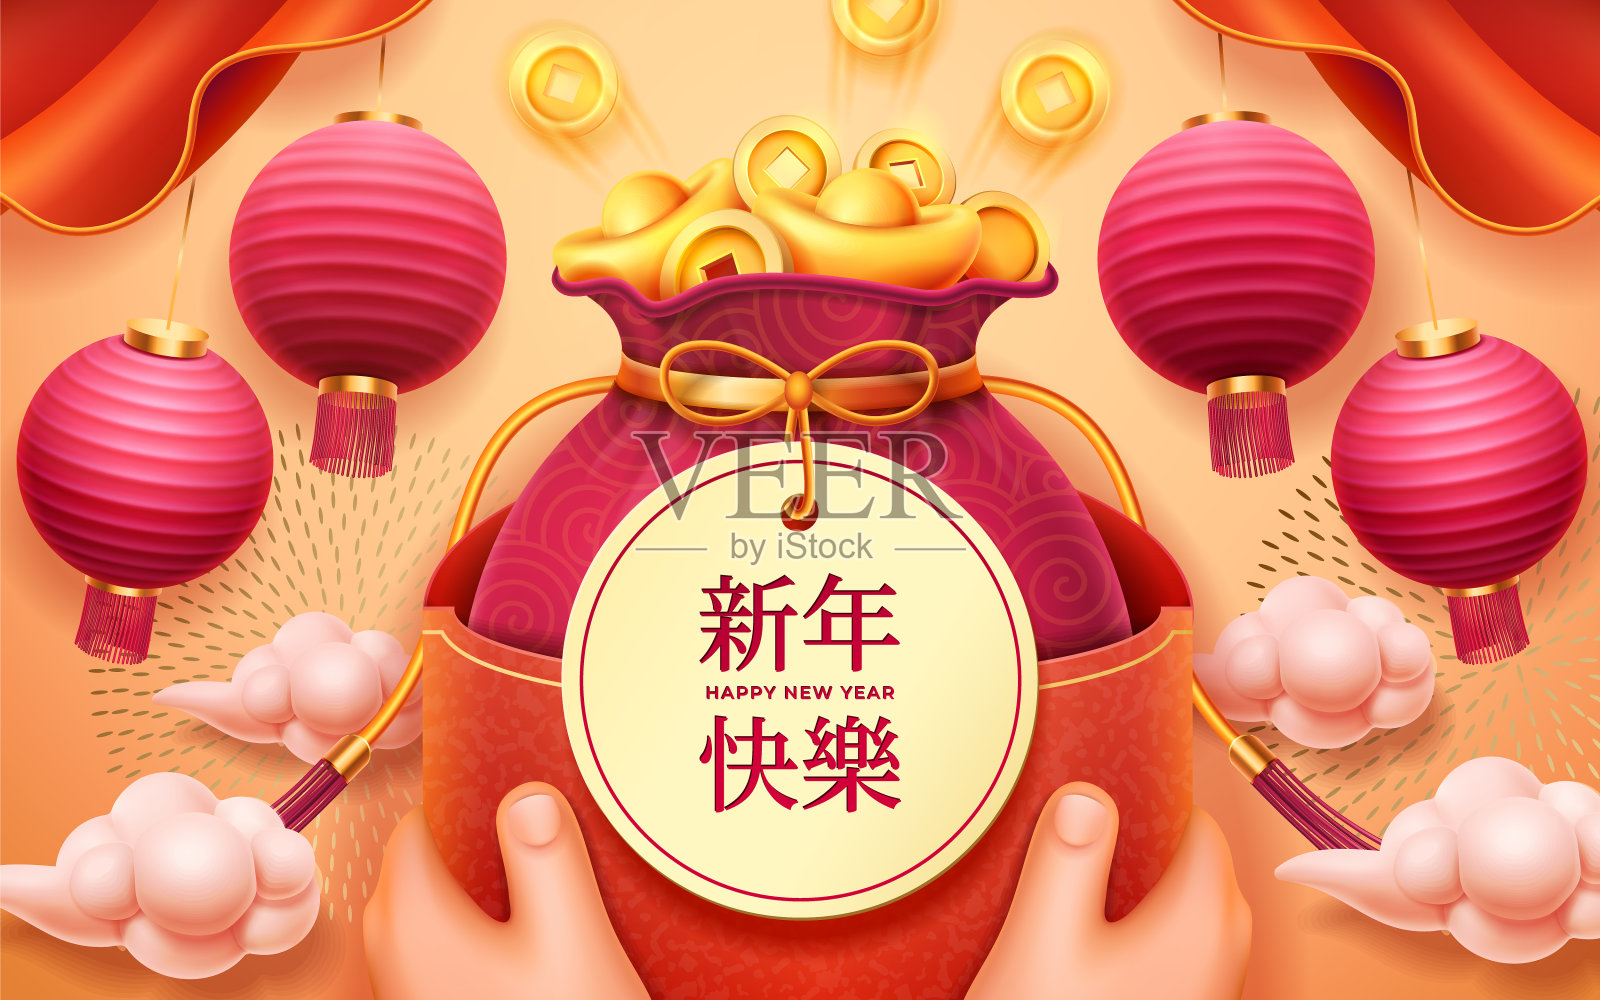 贺年贺卡或节日祝福信封封面设计。传统的中国新年象征，红色的纸灯笼，手里的金币袋和金色的烟花云设计模板素材